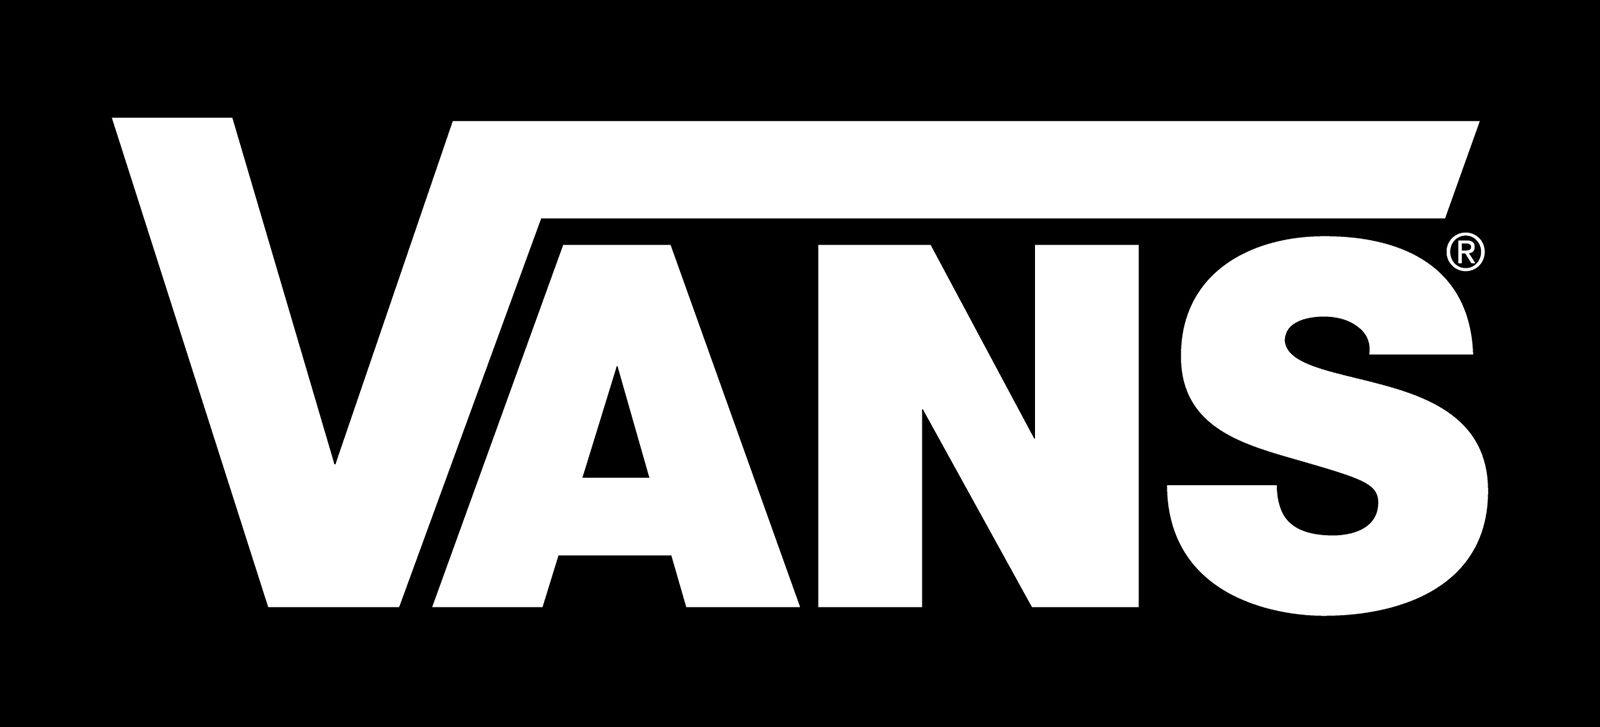 The Vans Logo - Vans Logo, Vans Symbol, Meaning, History and Evolution